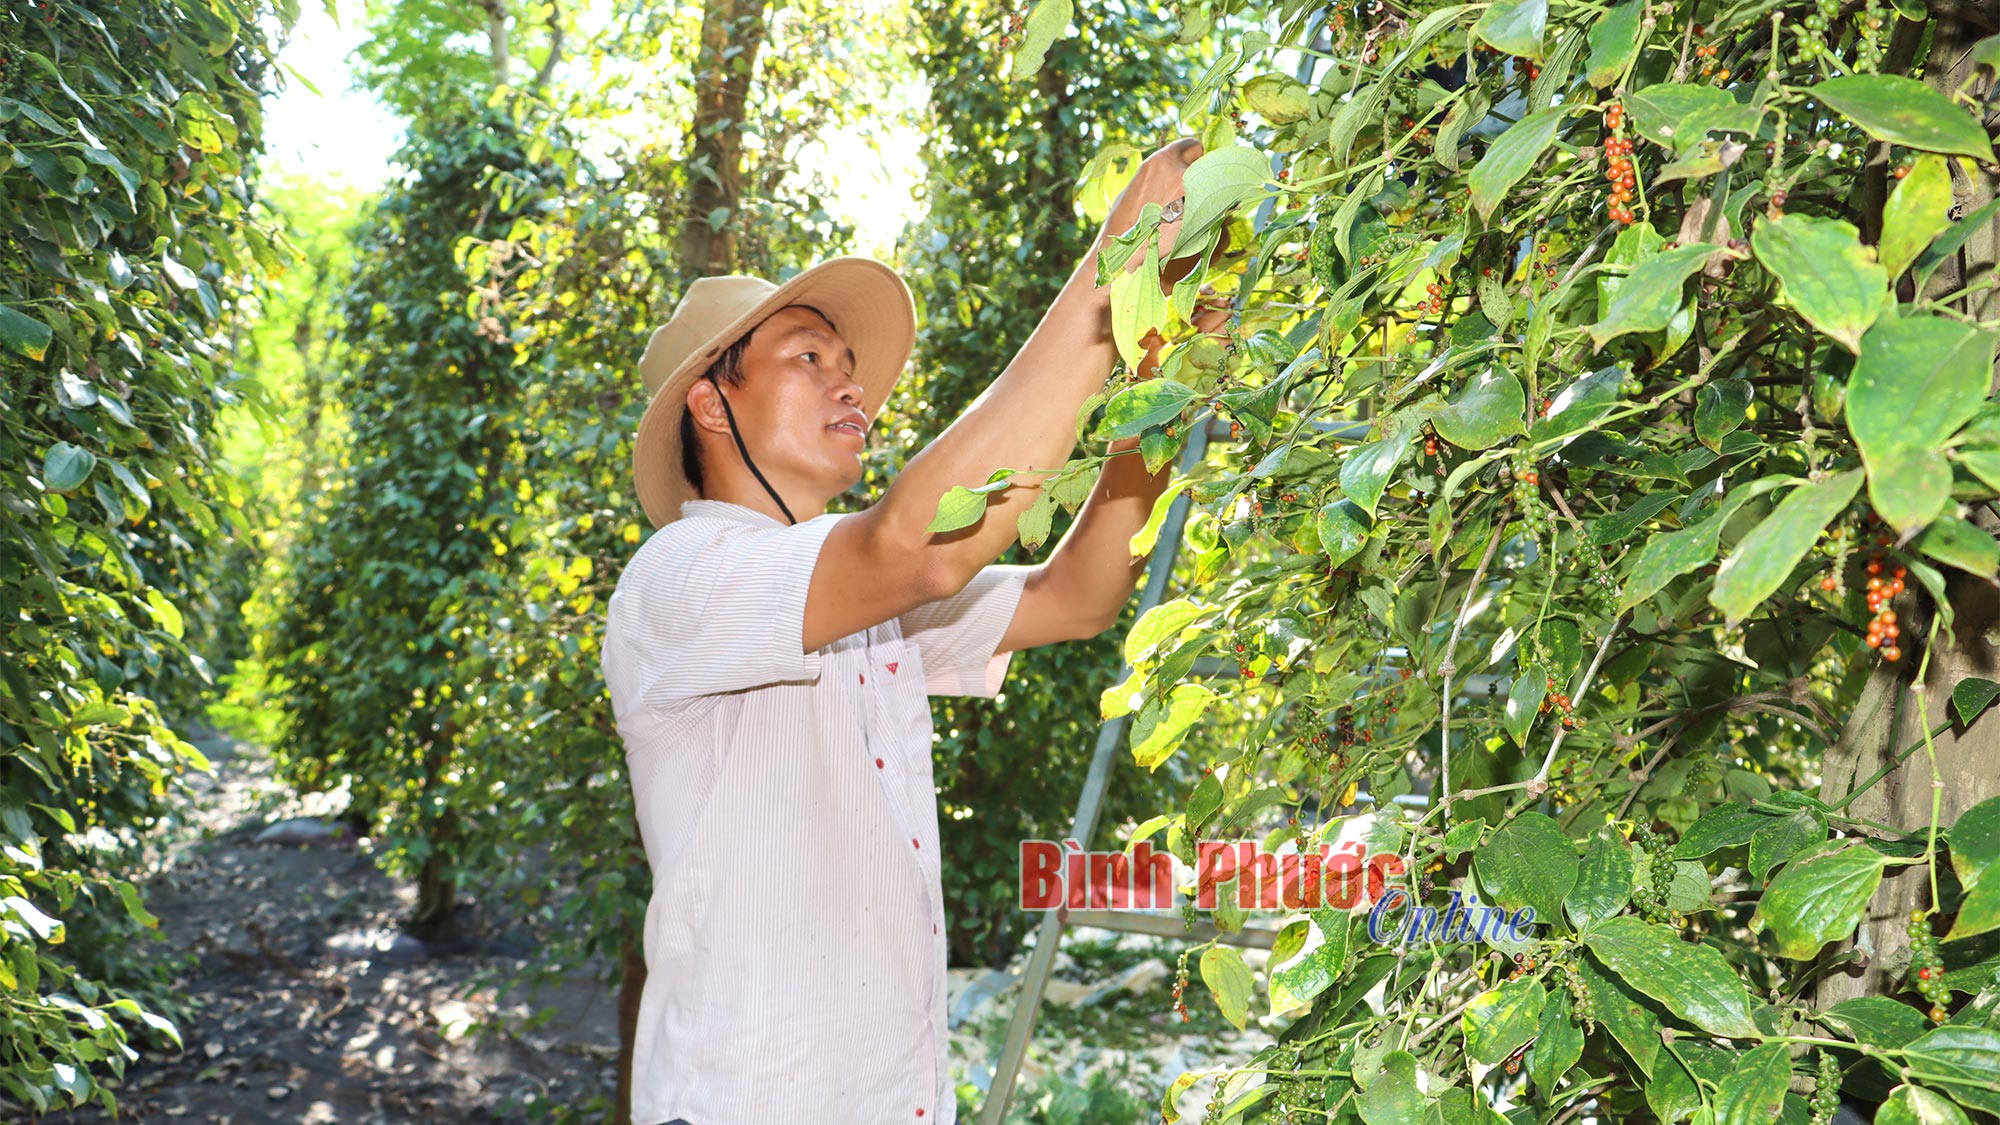 Giá tiêu cán mốc 100.000 đồng/kg, nhiều nông dân ở Bình Phước lại tiếc hùi hụi vì điều này- Ảnh 1.